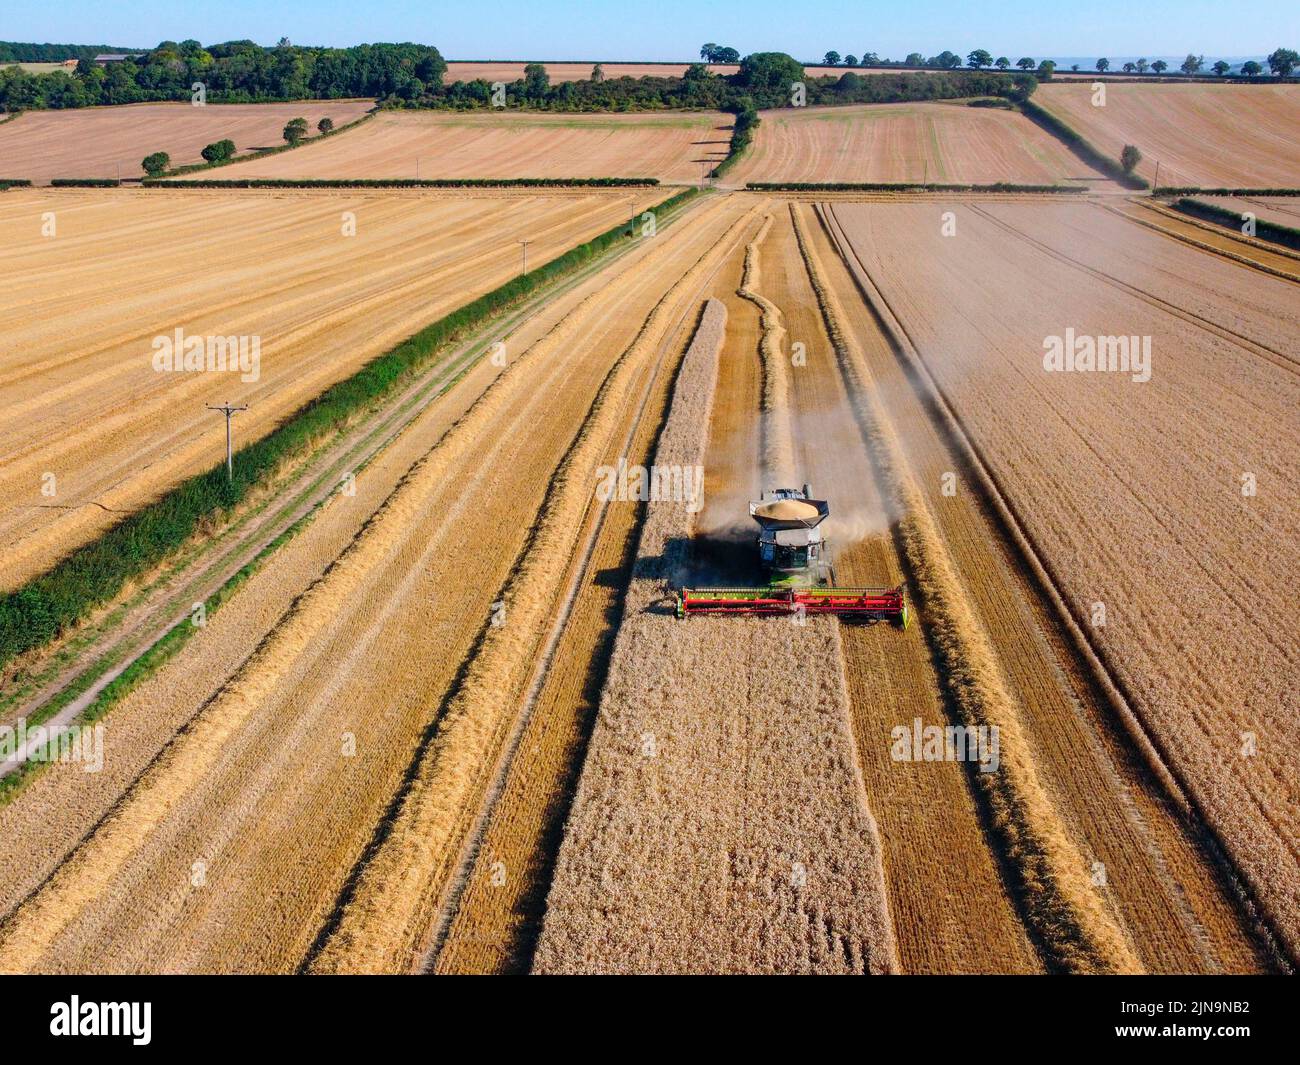 Vue aérienne d'une moissonneuse-batteuse dans un paysage de champs de blé sur les terres agricoles du North Yorkshire au Royaume-Uni. Banque D'Images